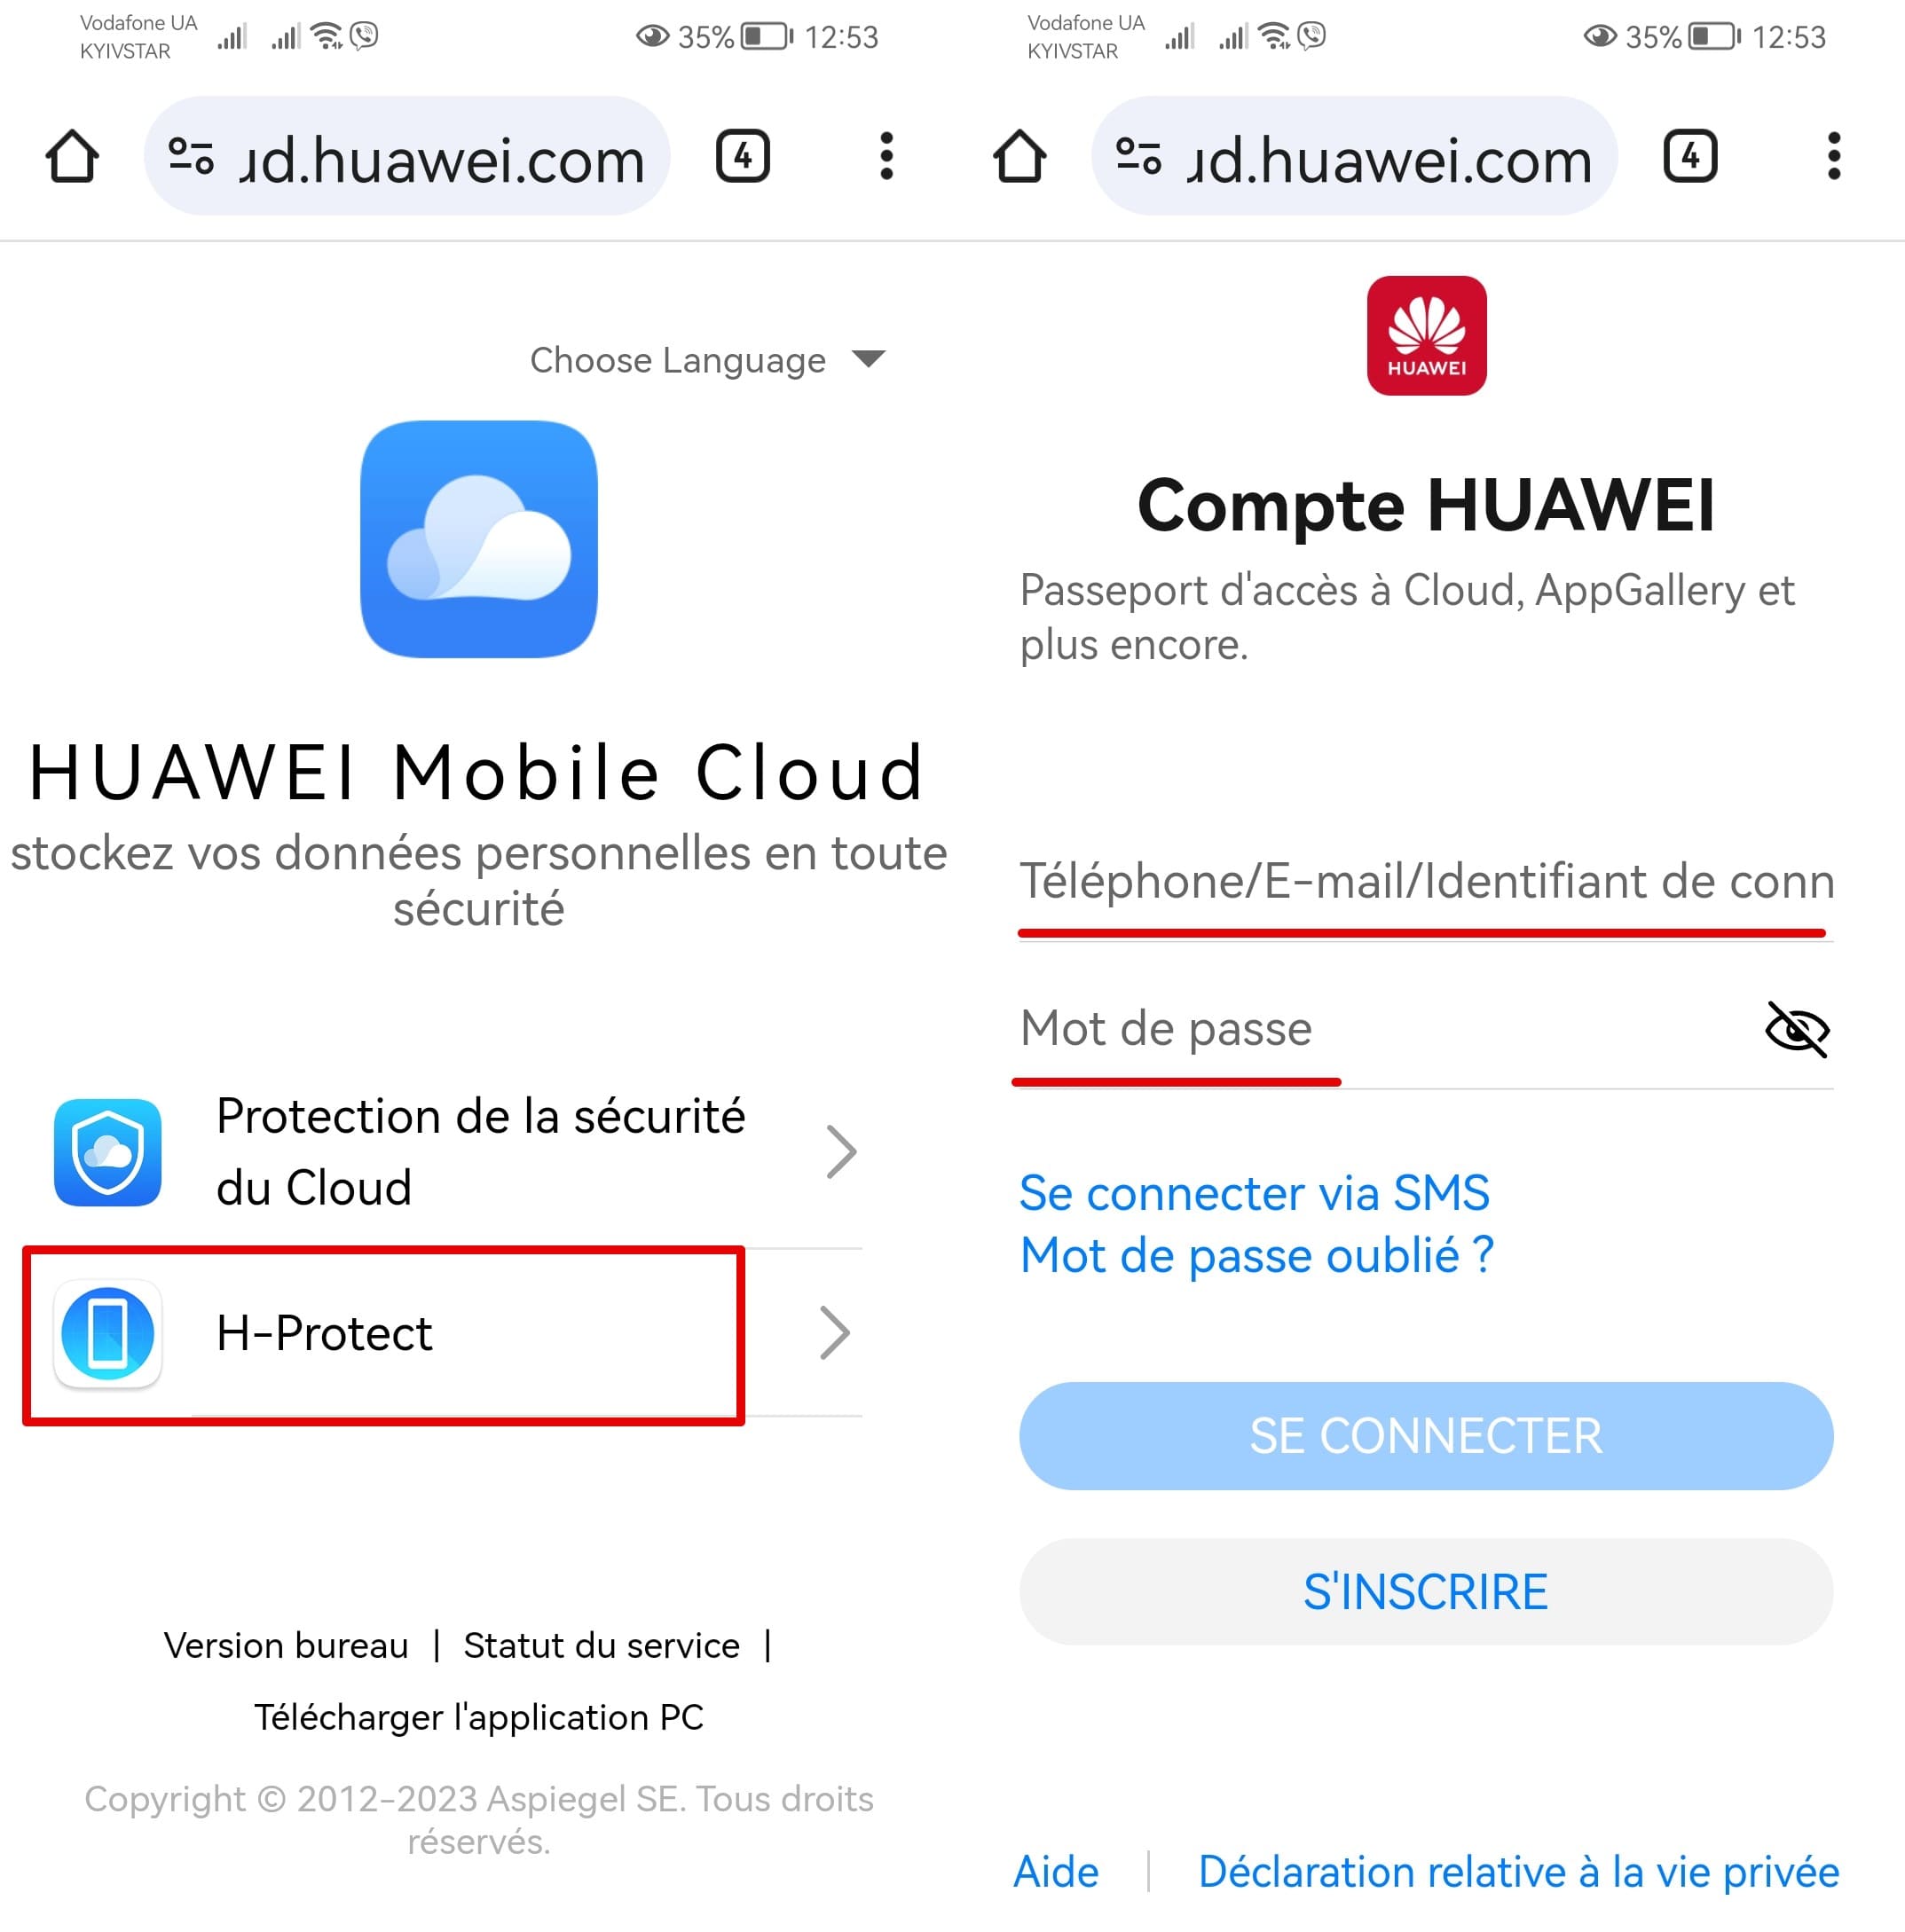 Captures d'écran de la page Huawei Mobile Cloud et du compte Huawei avec les champs de connexion et de mot de passe